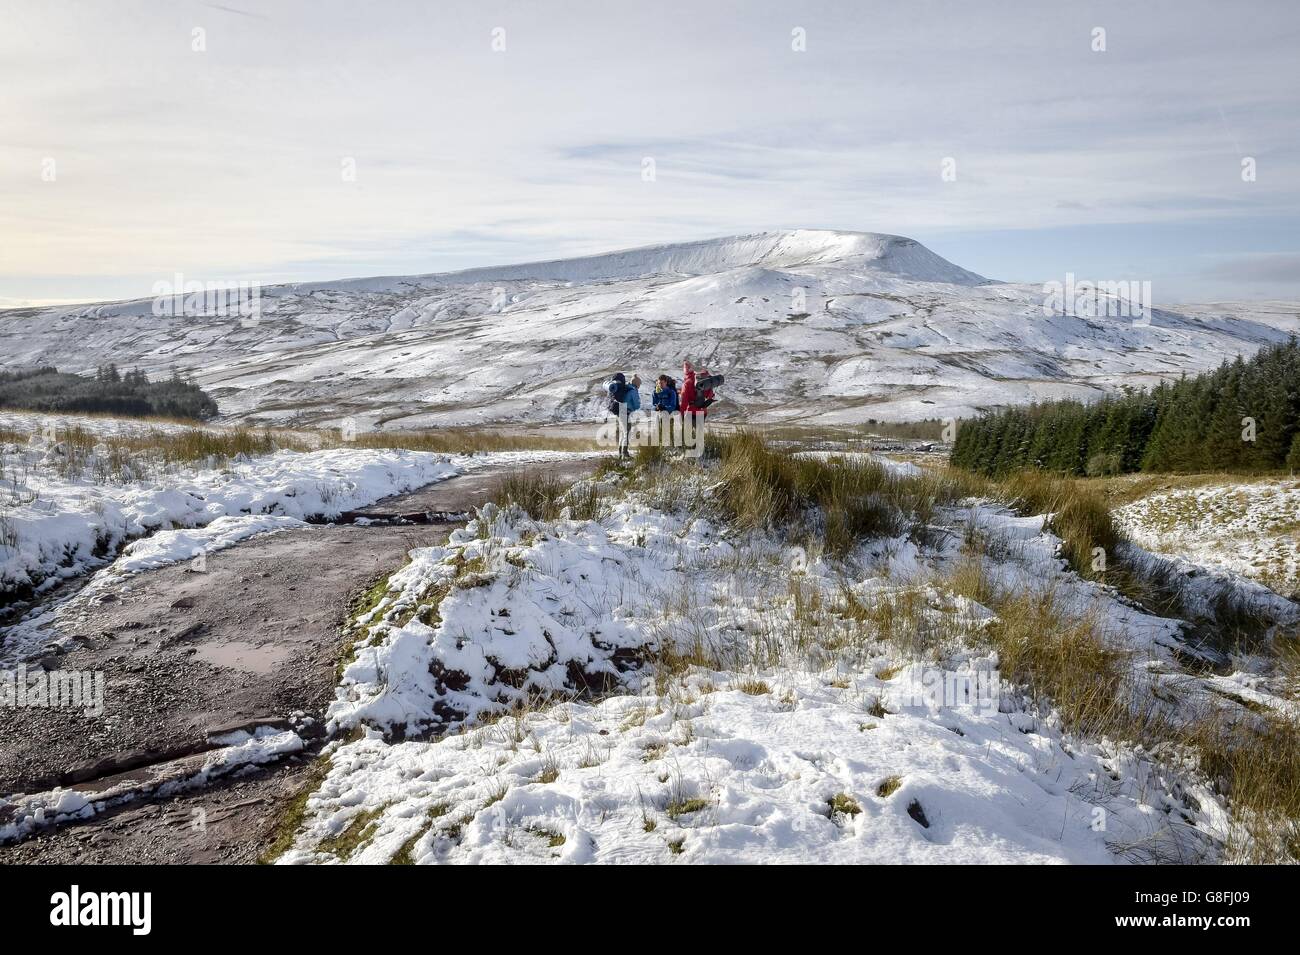 La gente fa una pausa mentre cammina sulla montagna innevata Pen y Fan nel Brecon Beacons, Galles, mentre alcune parti del Regno Unito hanno visto una raffica di neve durante la notte all'inizio di un fine settimana di viteria che poteva vedere le temperature precipitare a meno 5C. Foto Stock